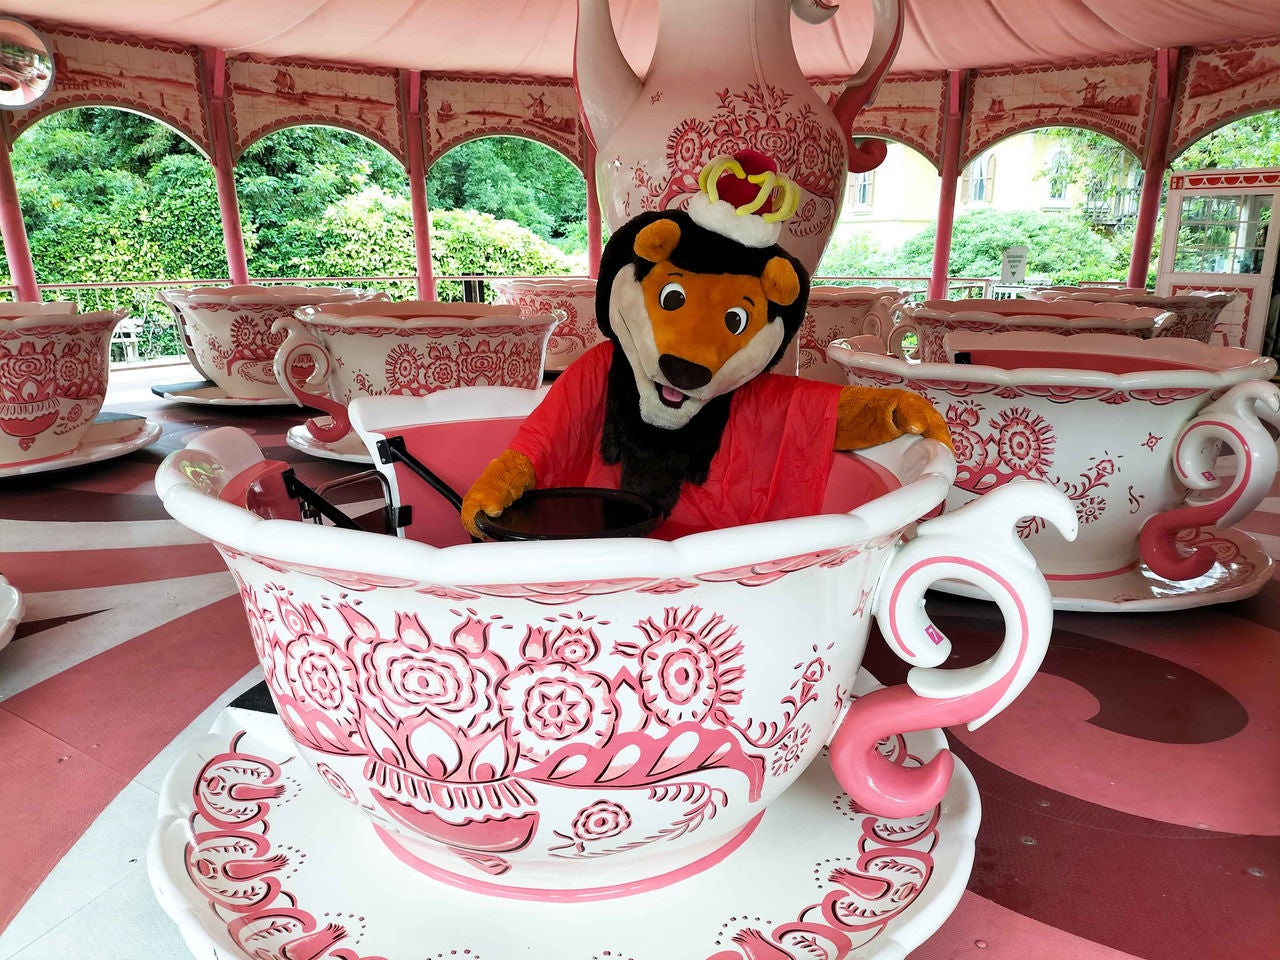 Koning Leeuw met regenjas in Koffietassen.